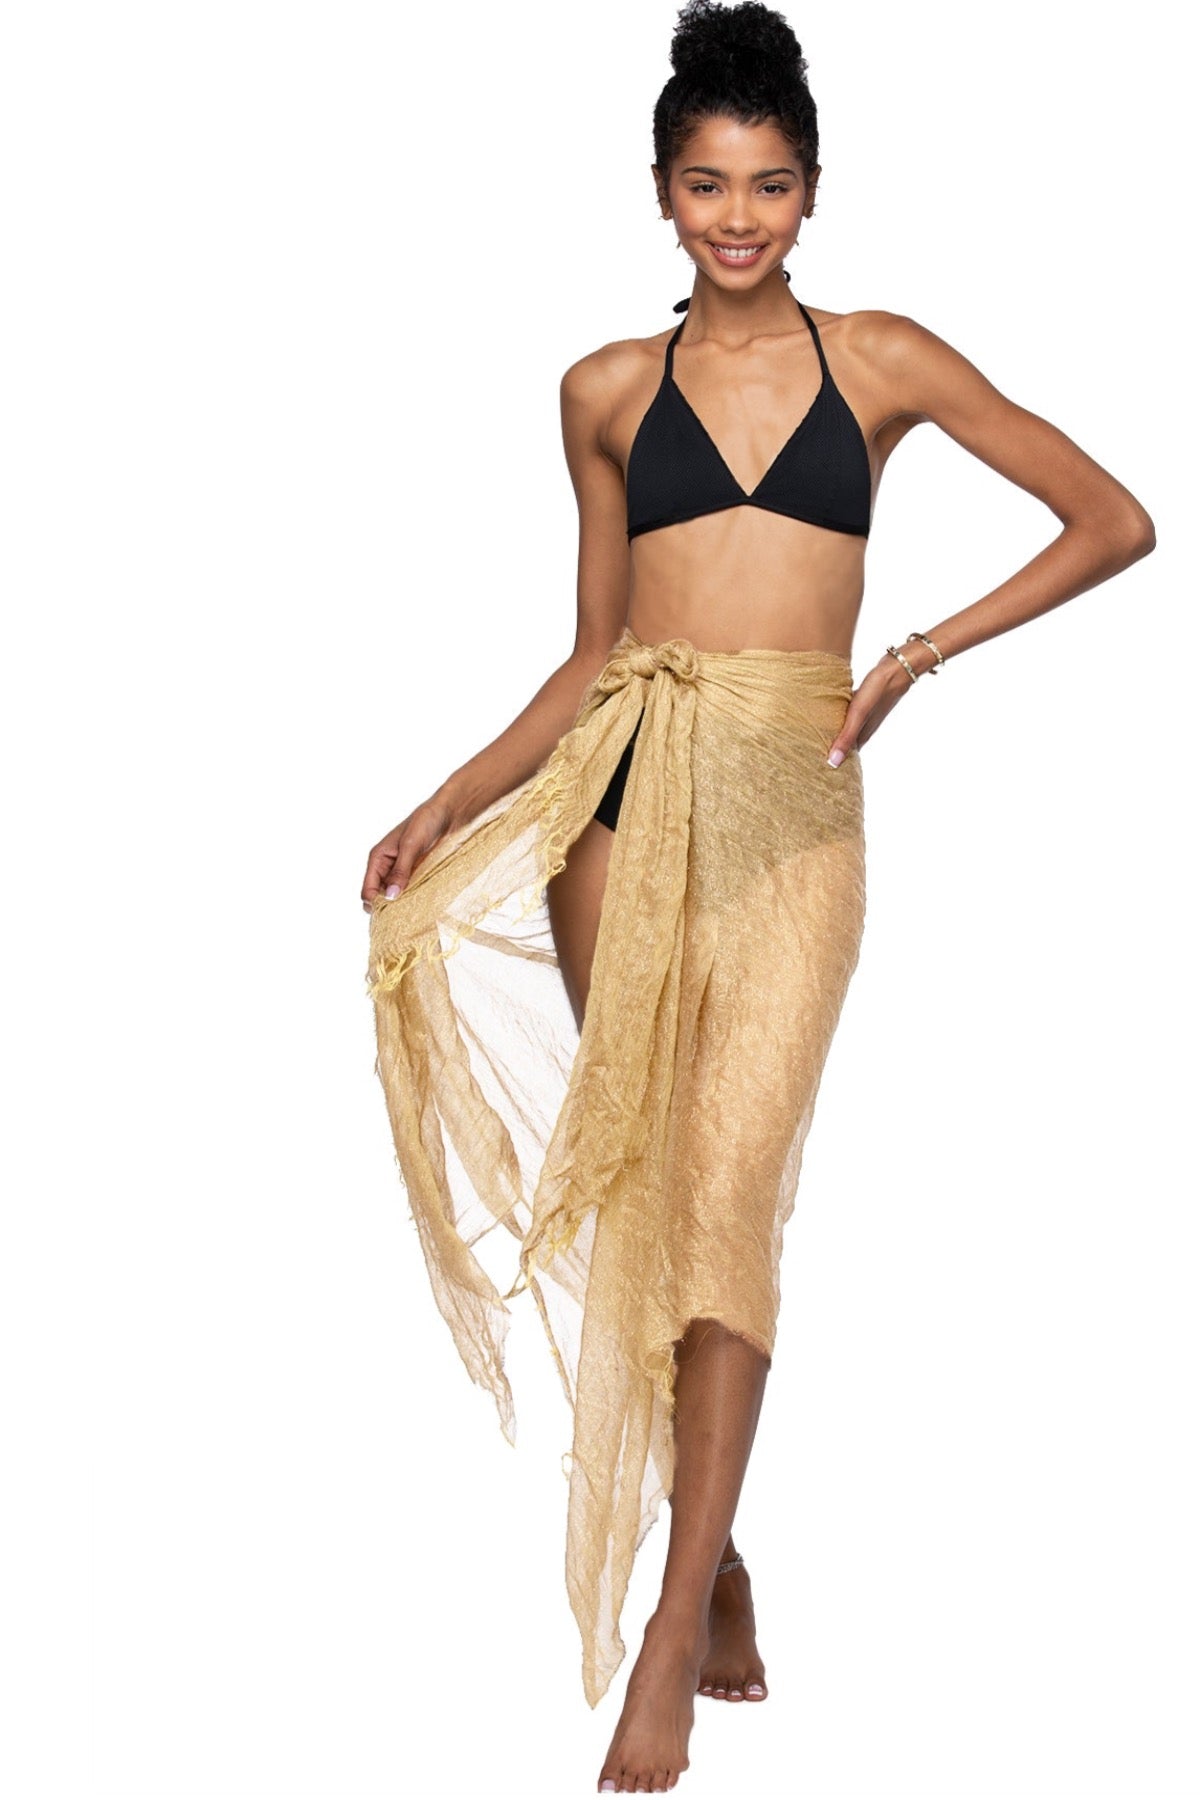 wrap sarong skirt, wrap sarong skirt Suppliers and Manufacturers